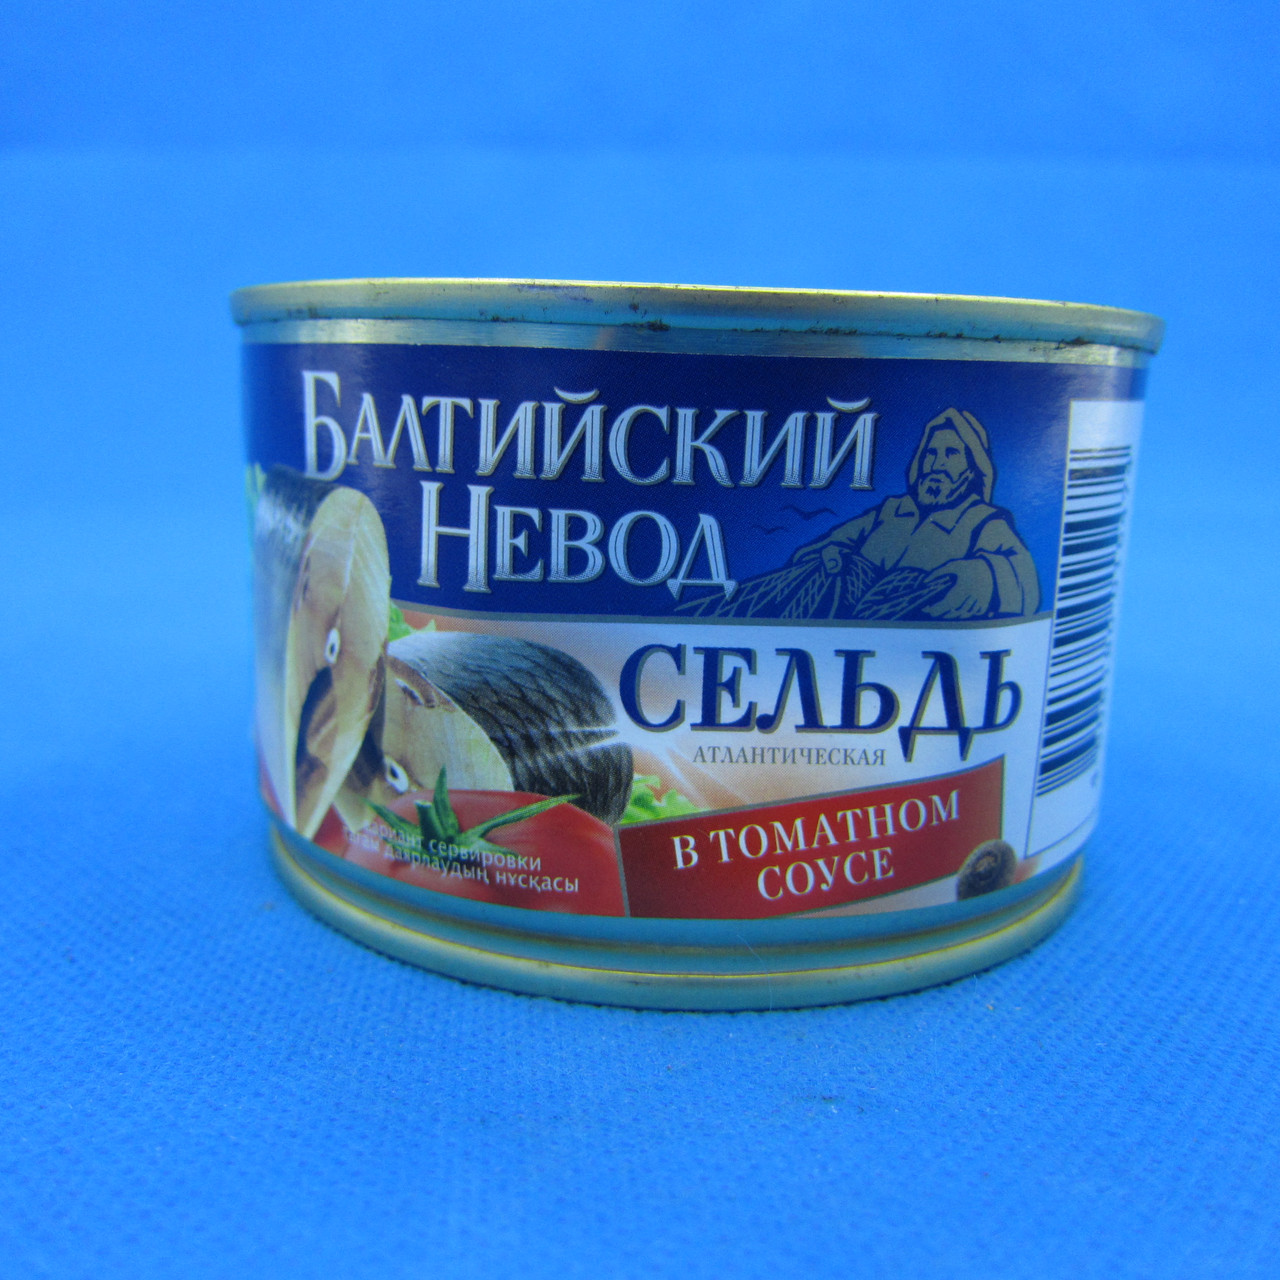 БАЛТИЙСКИЙ НЕВОД / Сельд атлантическая в томатном соусе